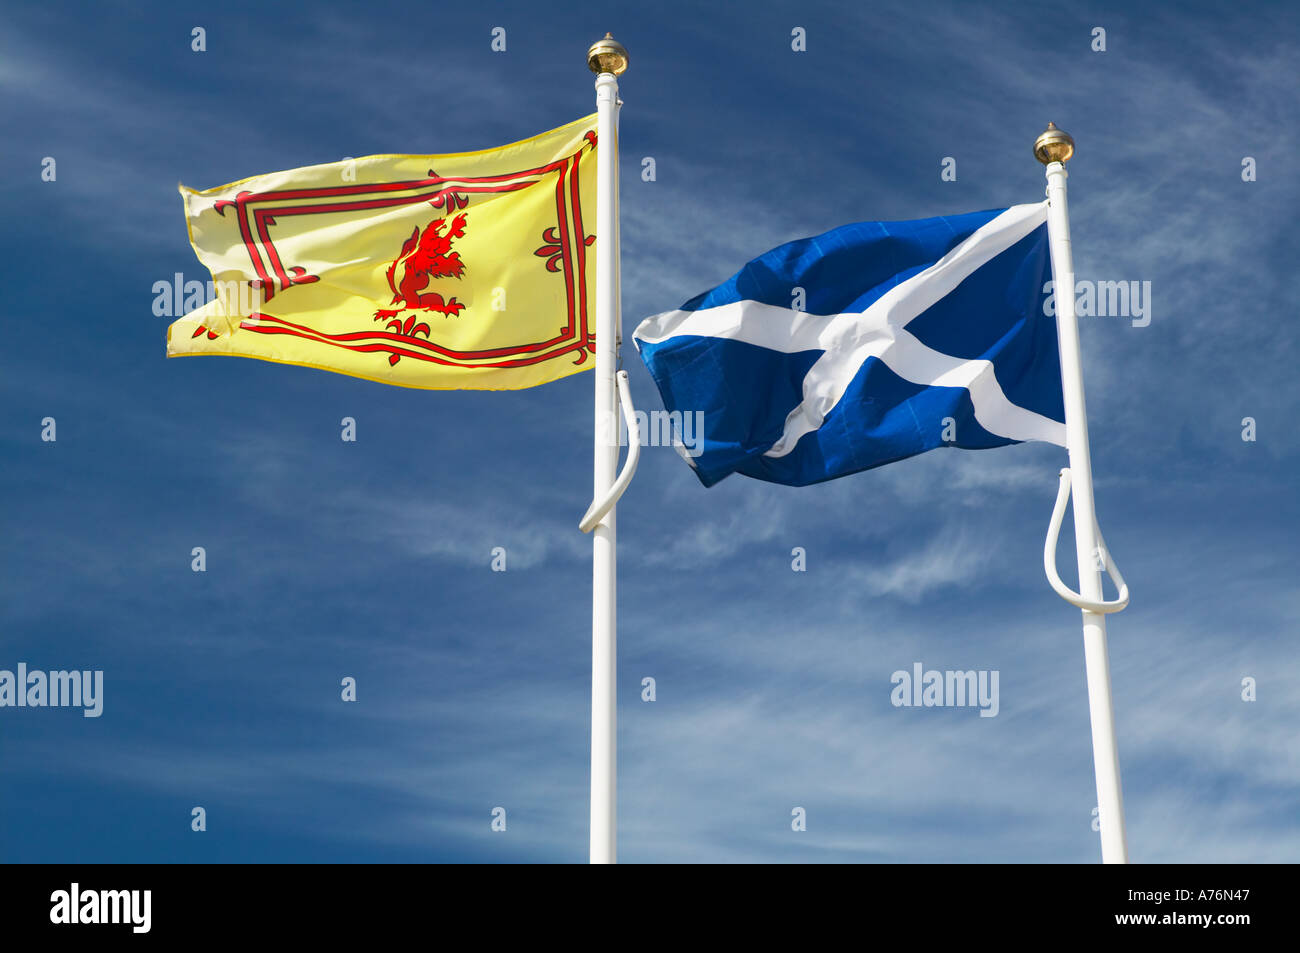 L'Écosse. La croix St Andrews, Drapeau Le drapeau national de l'Écosse et la bannière royale écossaise avec le lion rouge Banque D'Images